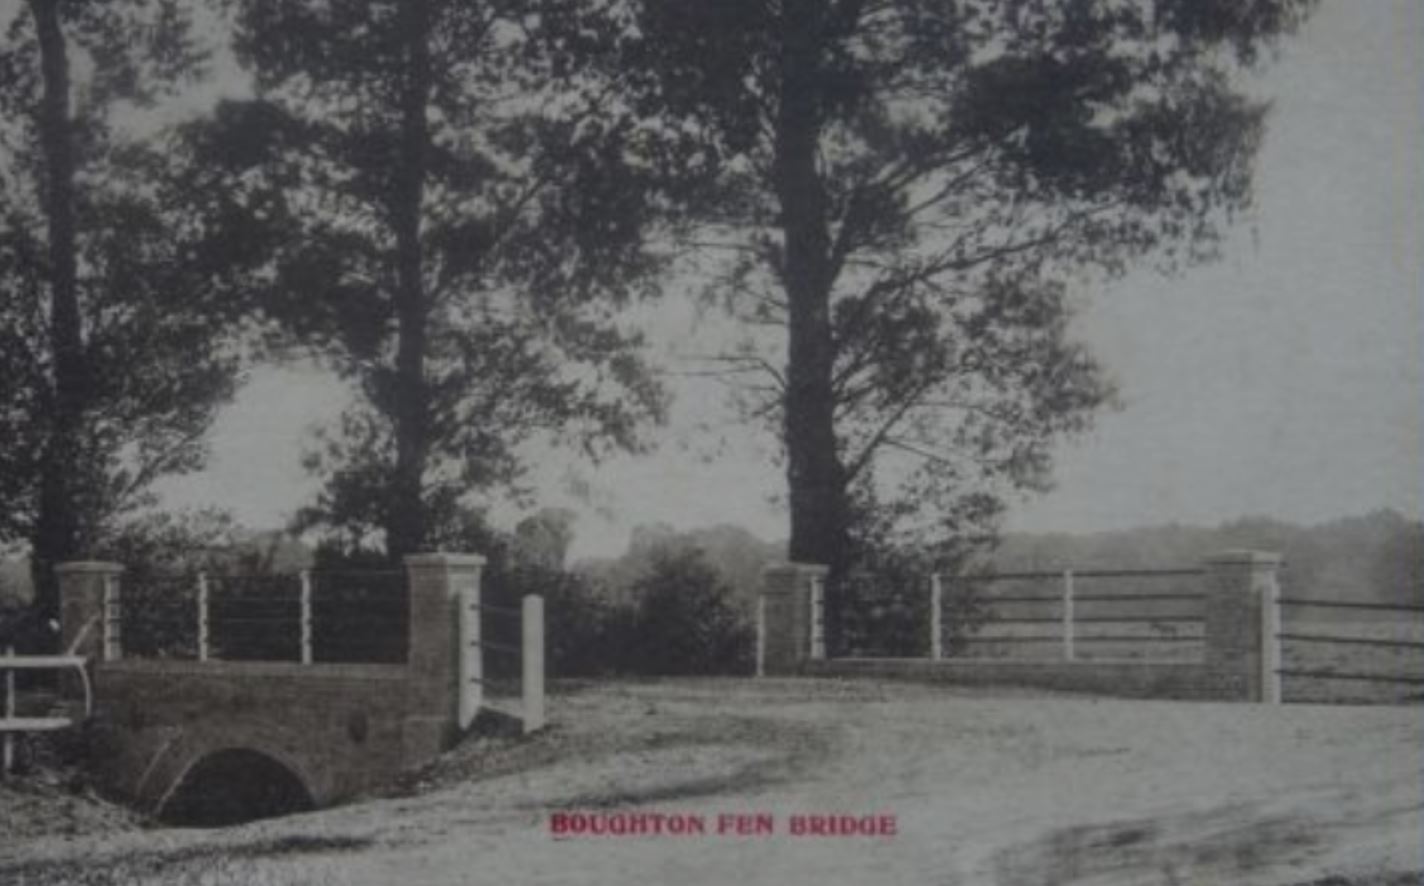 Boughton Fen Bridge - Oxborough Road/Eastmoor Road T Junction